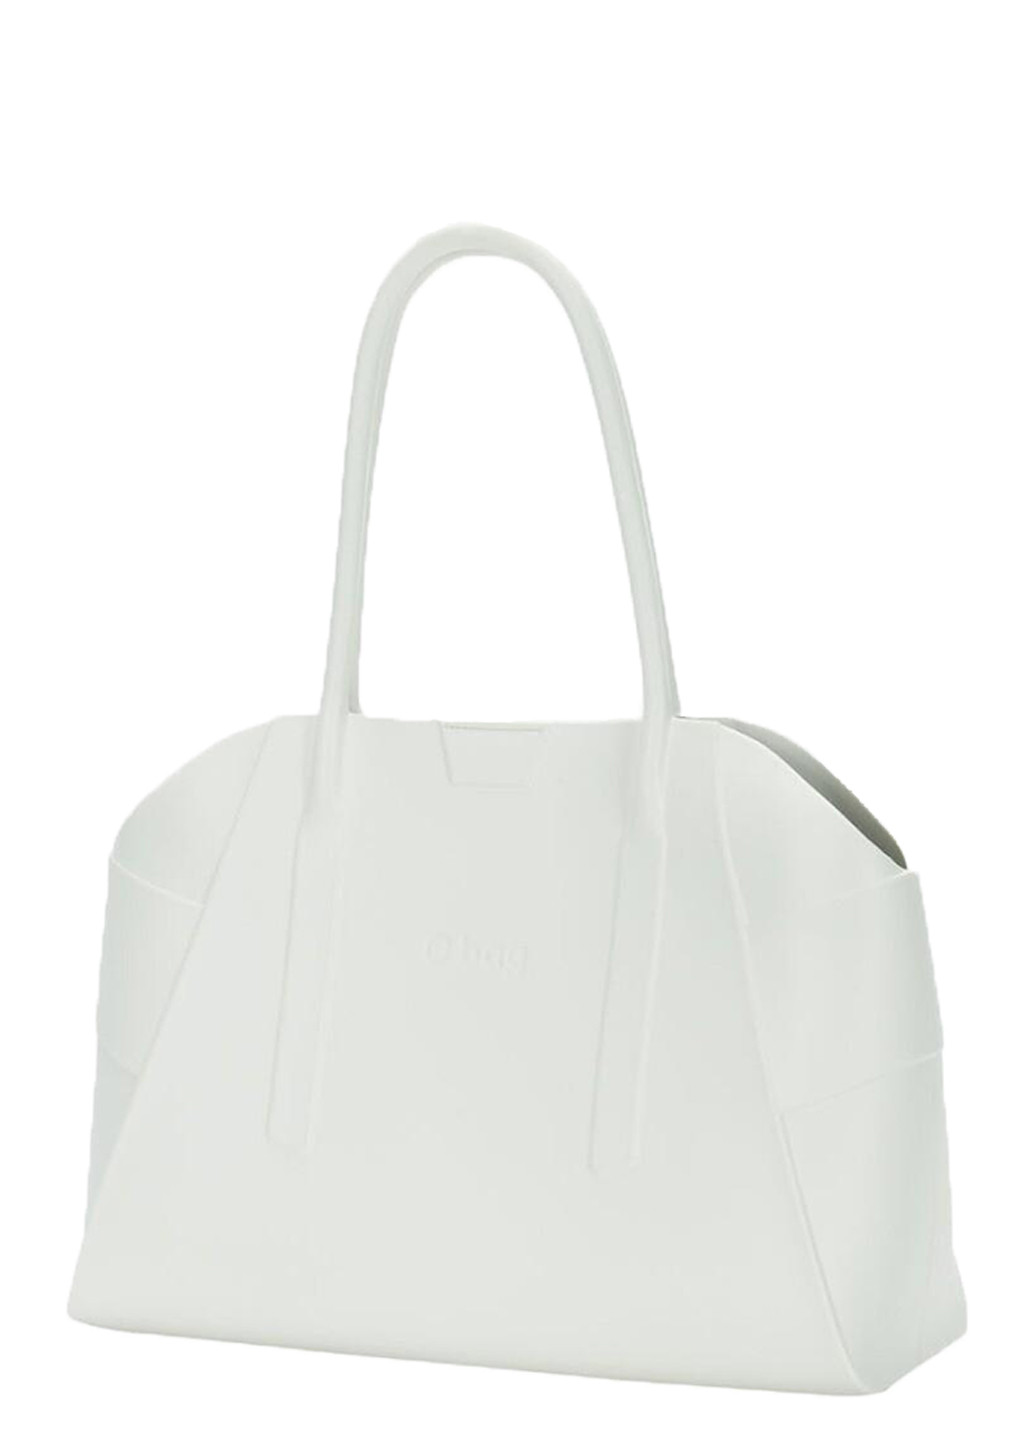 Женская сумка Белая O bag unique (248669275)